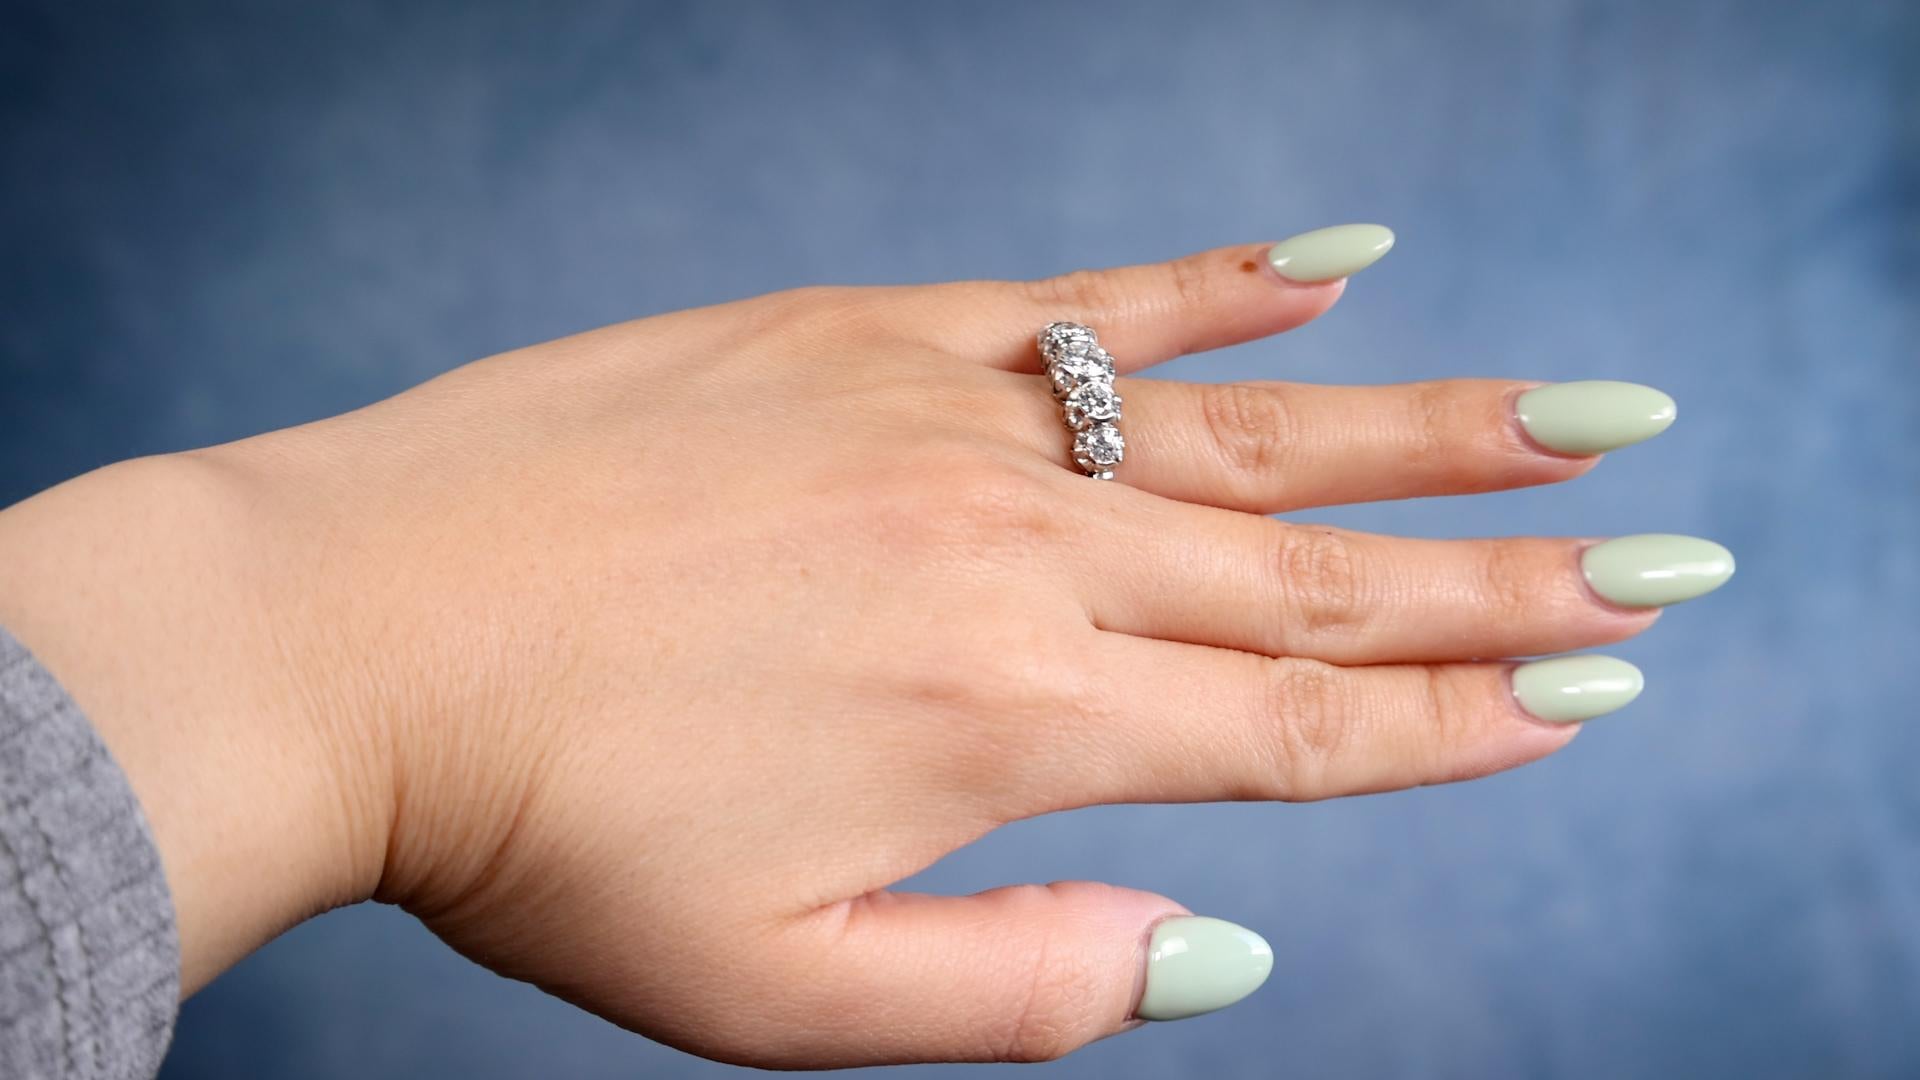 Brilliant Cut Art Deco Diamond 18k White Gold Five Stone Ring For Sale